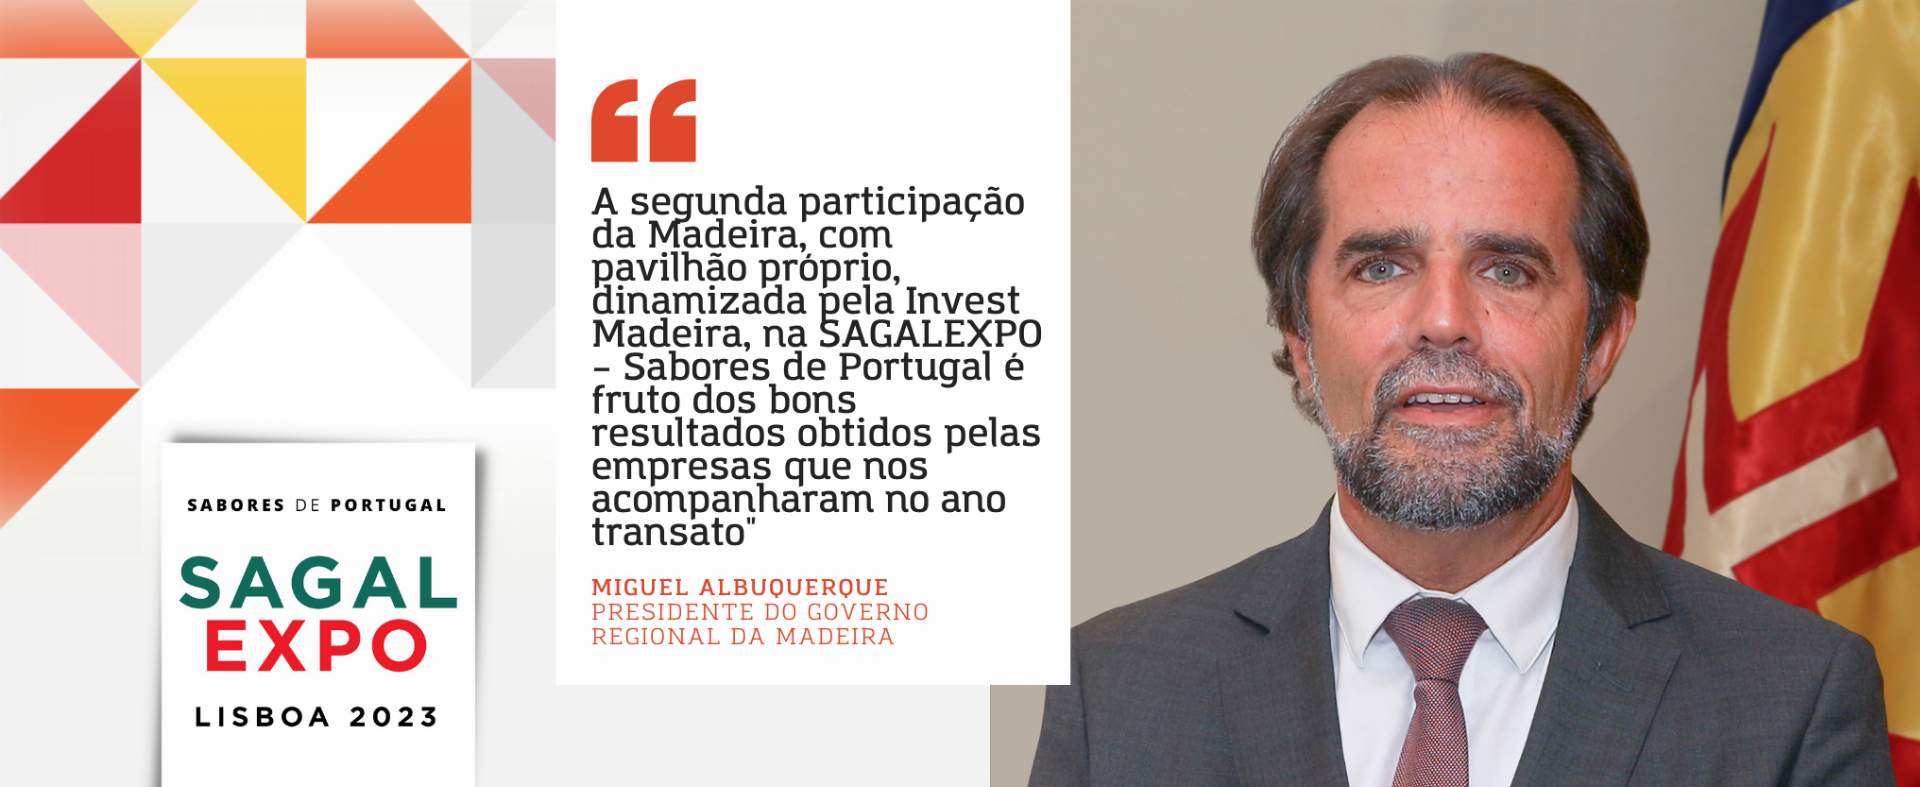 Miguel Albuquerque, Presidente do Governo da Madeira: “A segunda participação da Madeira na SAGALEXPO – Sabores de Portugal é fruto dos bons resultados obtidos pelas empresas que nos acompanharam no ano transato”